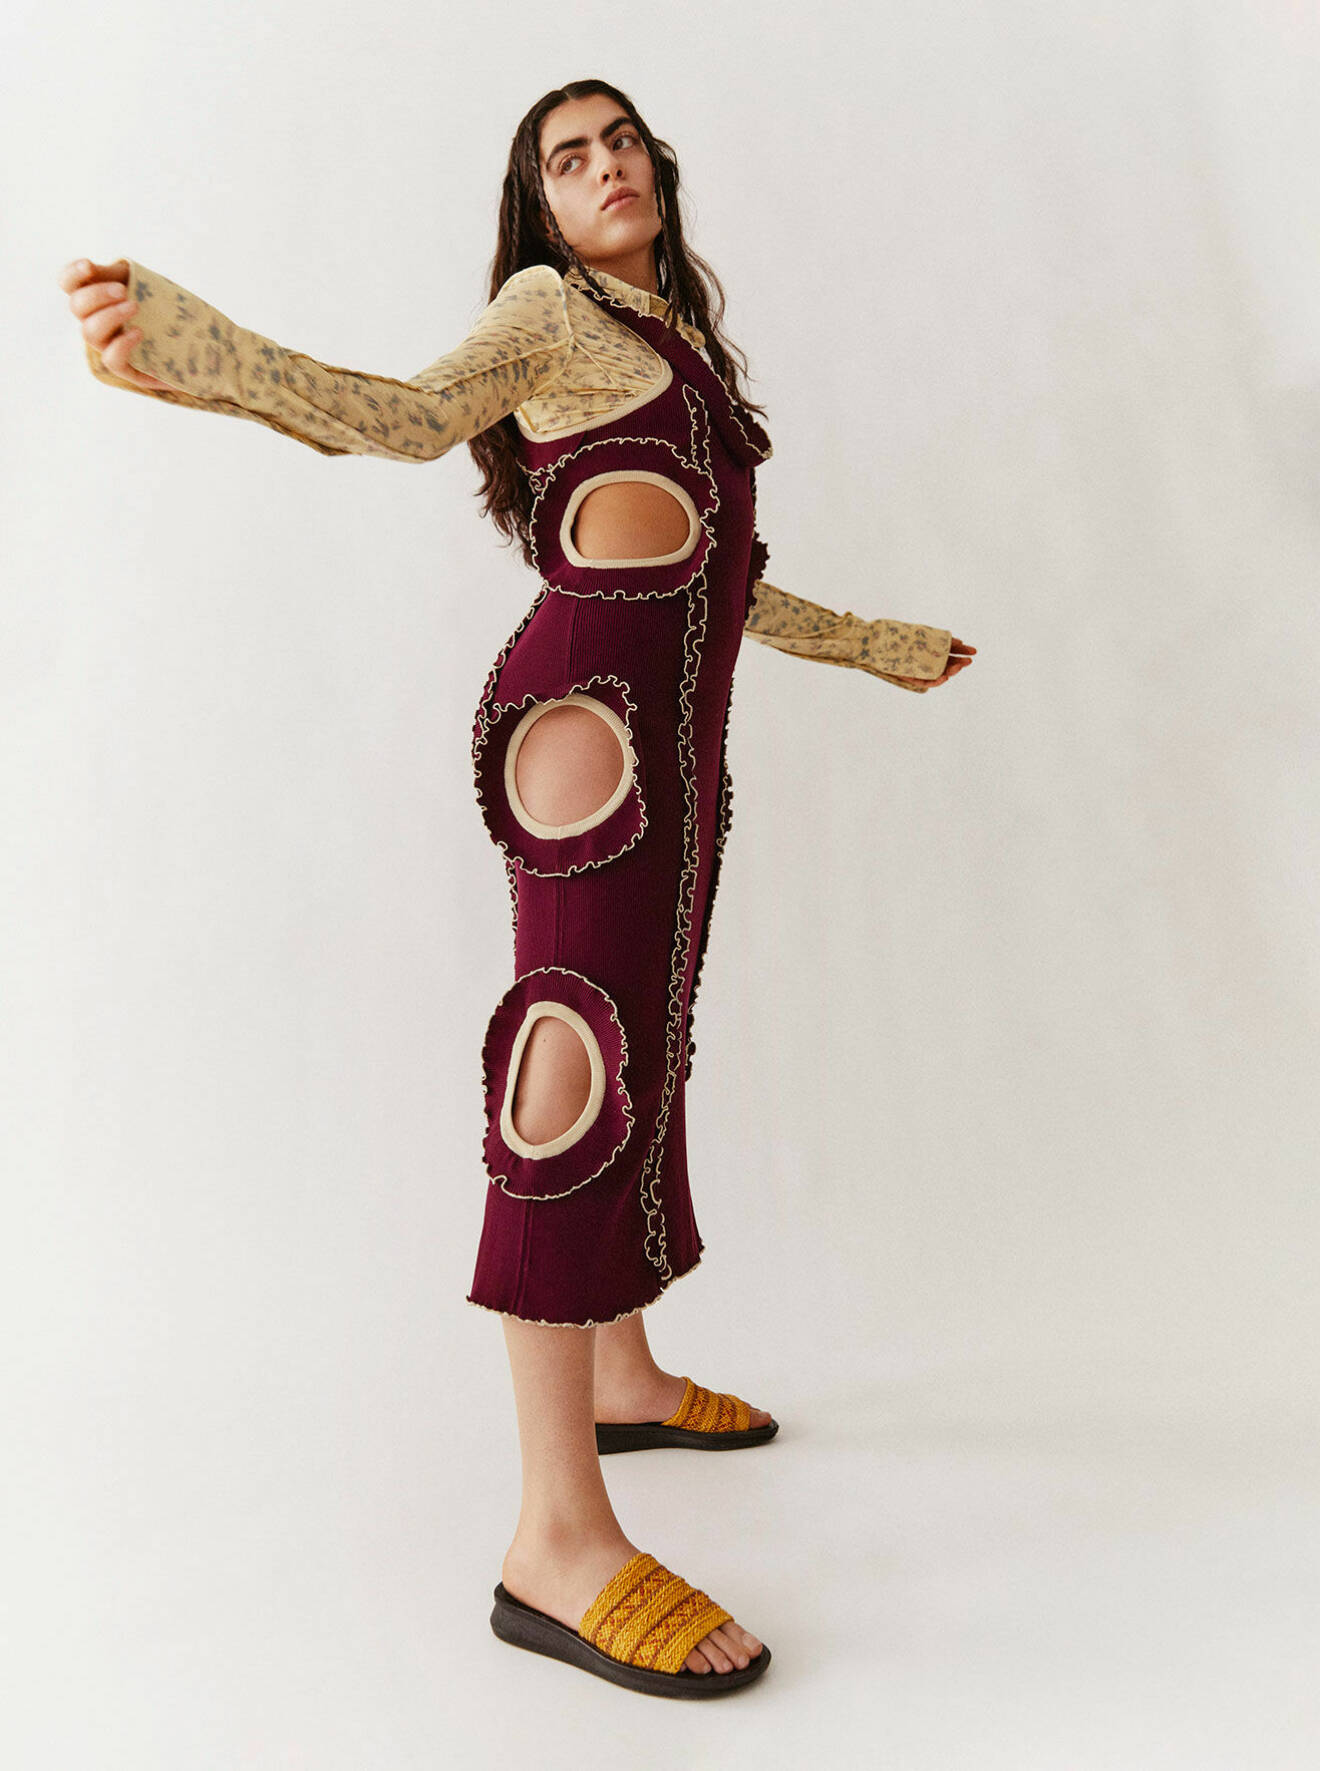 Modellen bär en vinröd klänning med cut out-detaljer och en blommig skjorta under